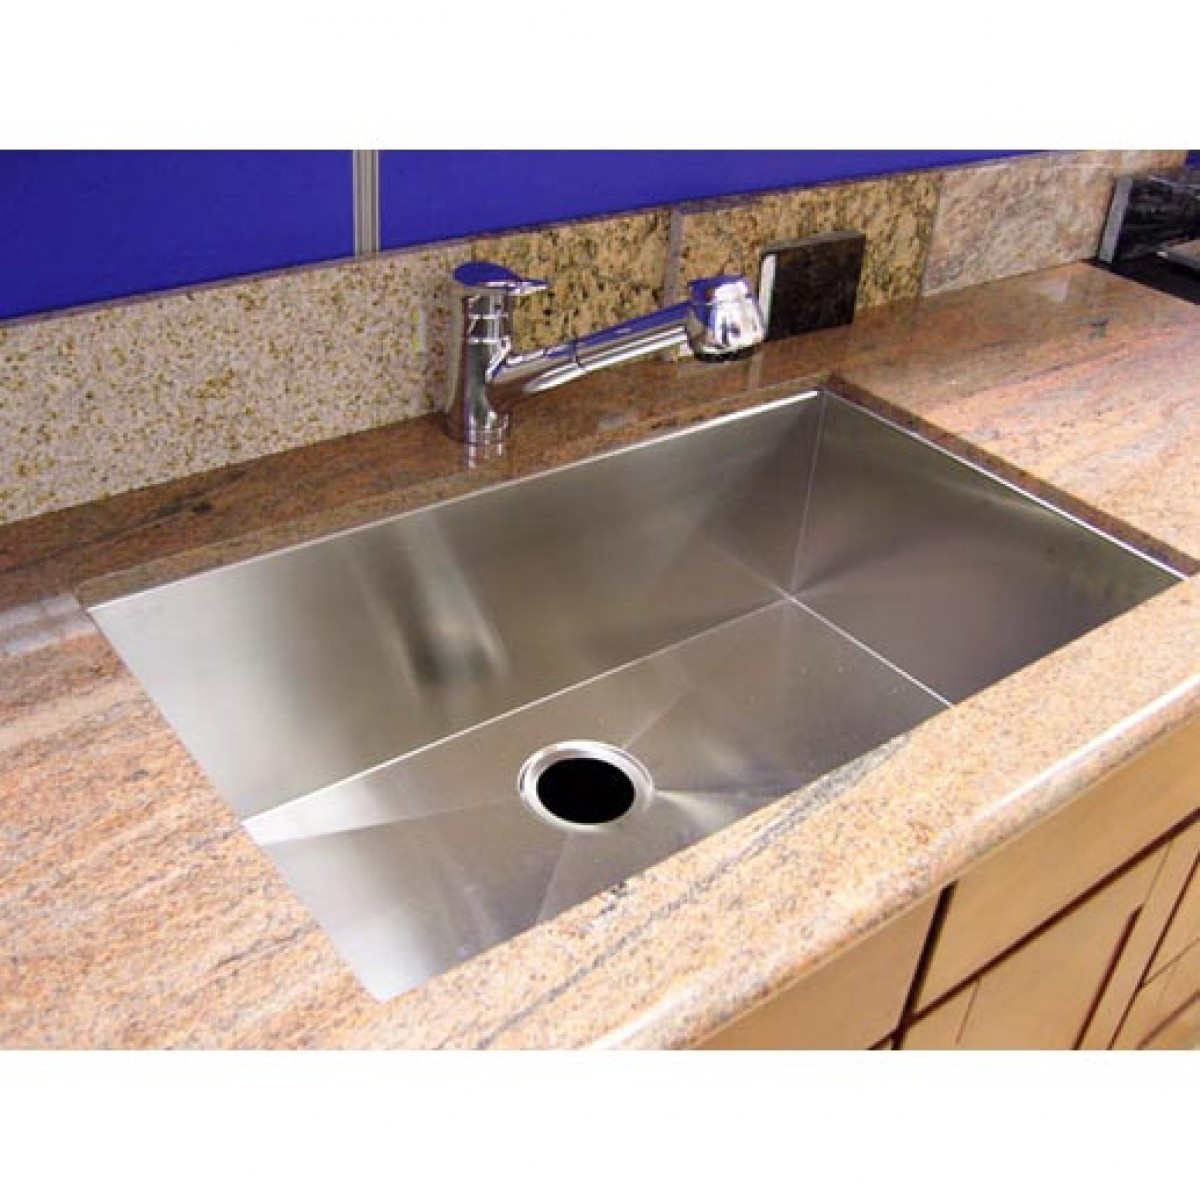 32 Inch Stainless Steel Undermount Single Bowl Kitchen Sink Zero Radius Design